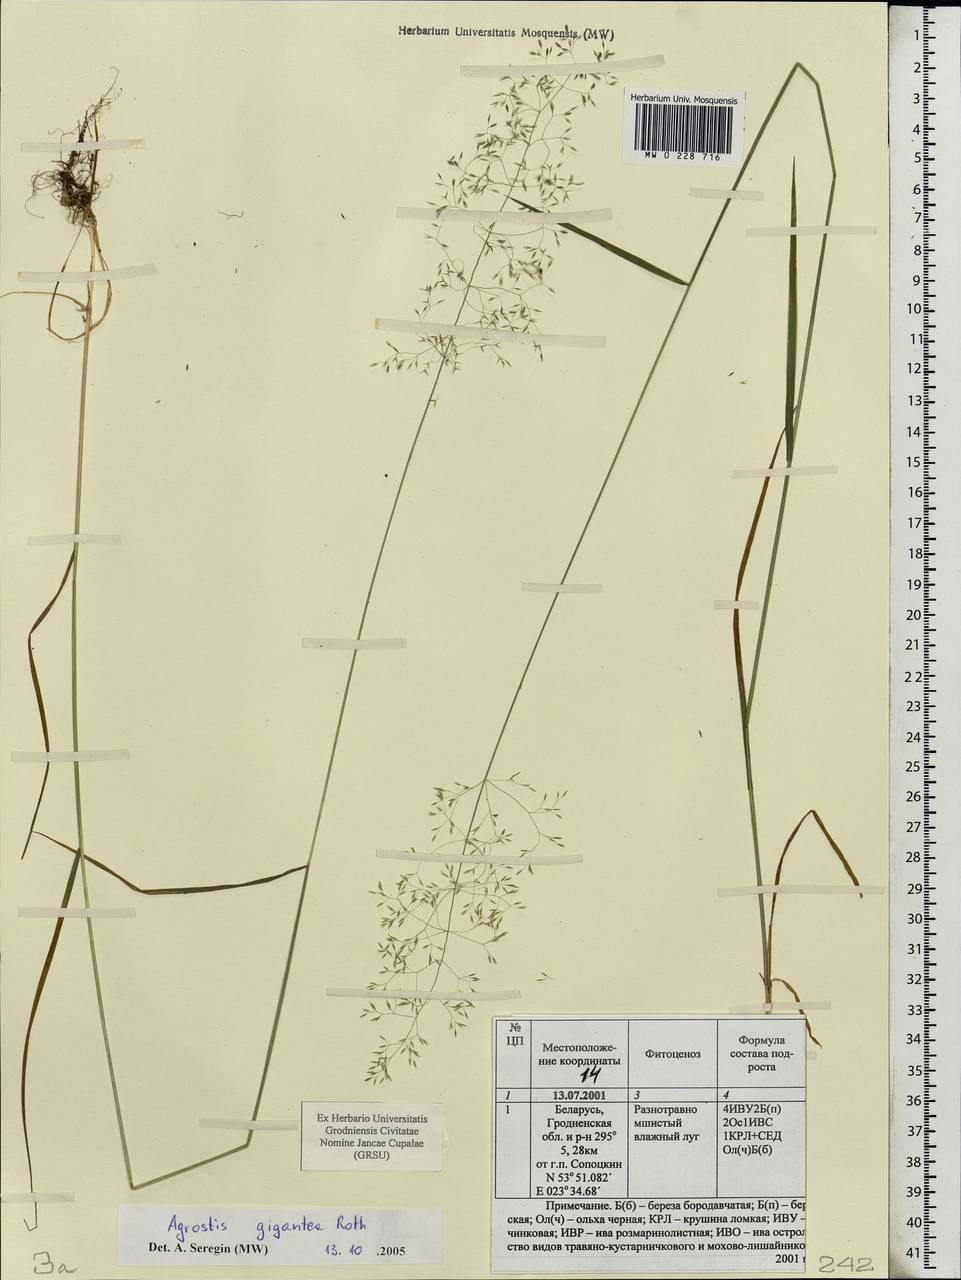 Agrostis gigantea Roth, Eastern Europe, Belarus (E3a) (Belarus)